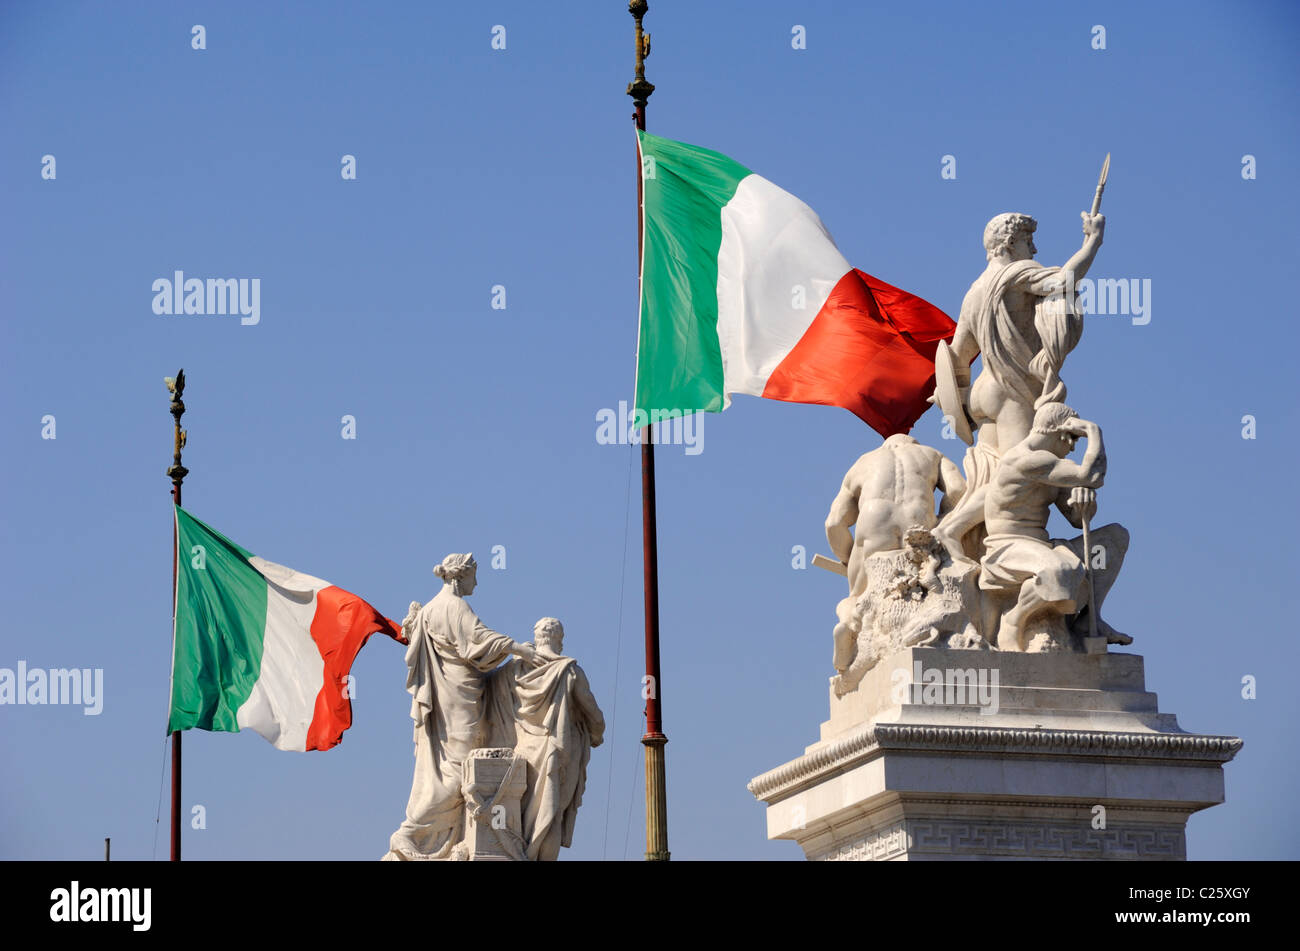 L'Italie, Rome, Piazza Venezia, le Vittoriano, des statues et des drapeaux italien Banque D'Images